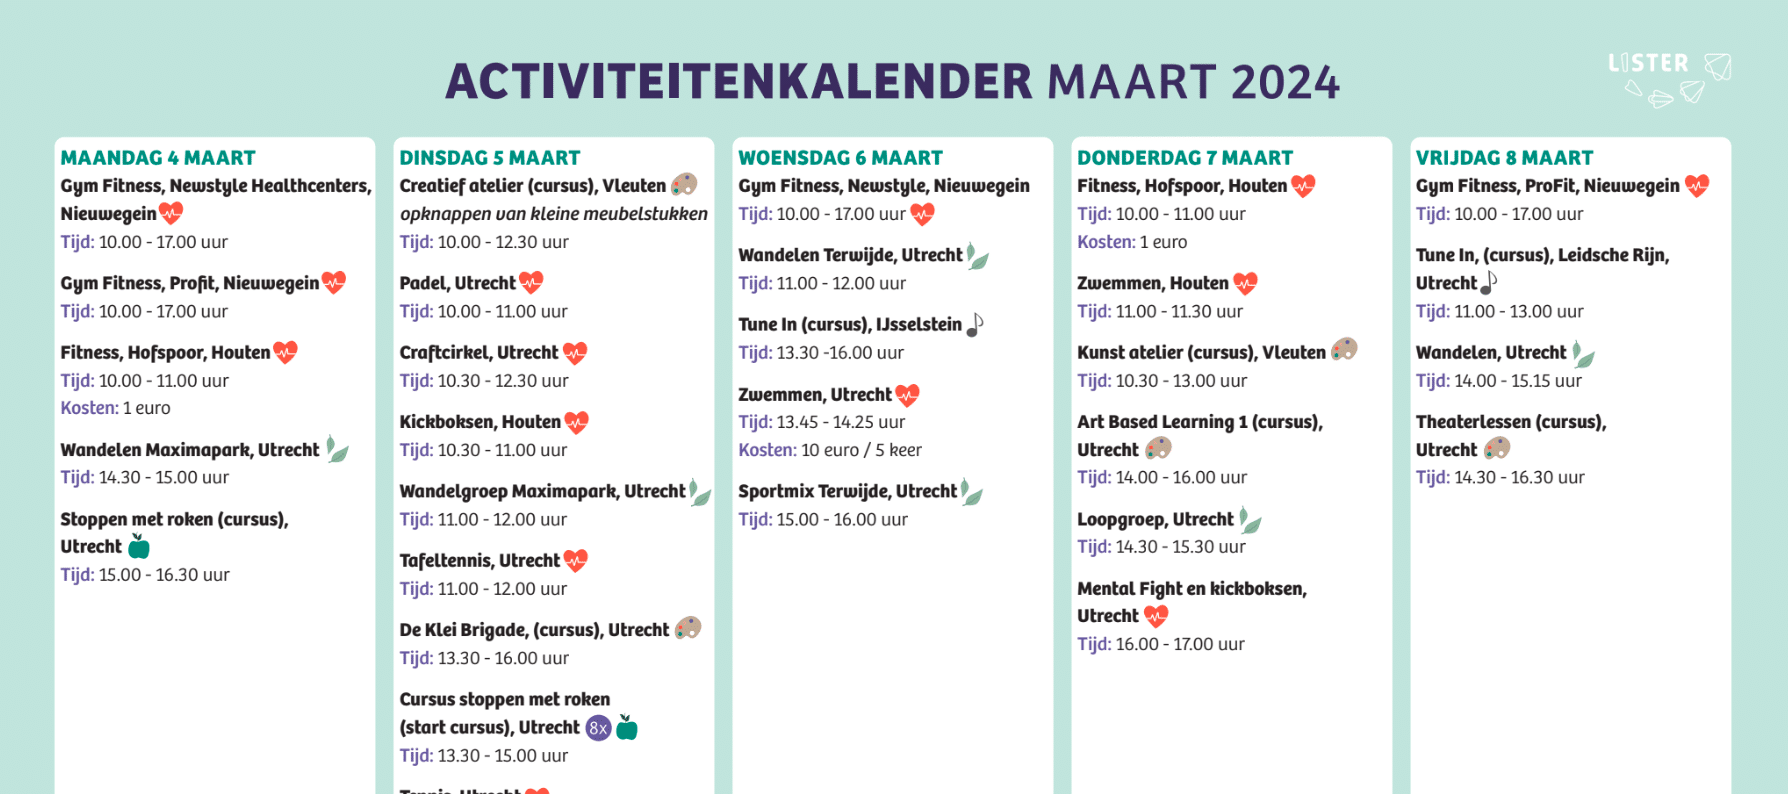 Foto van de activiteitenkalender van maart 2024